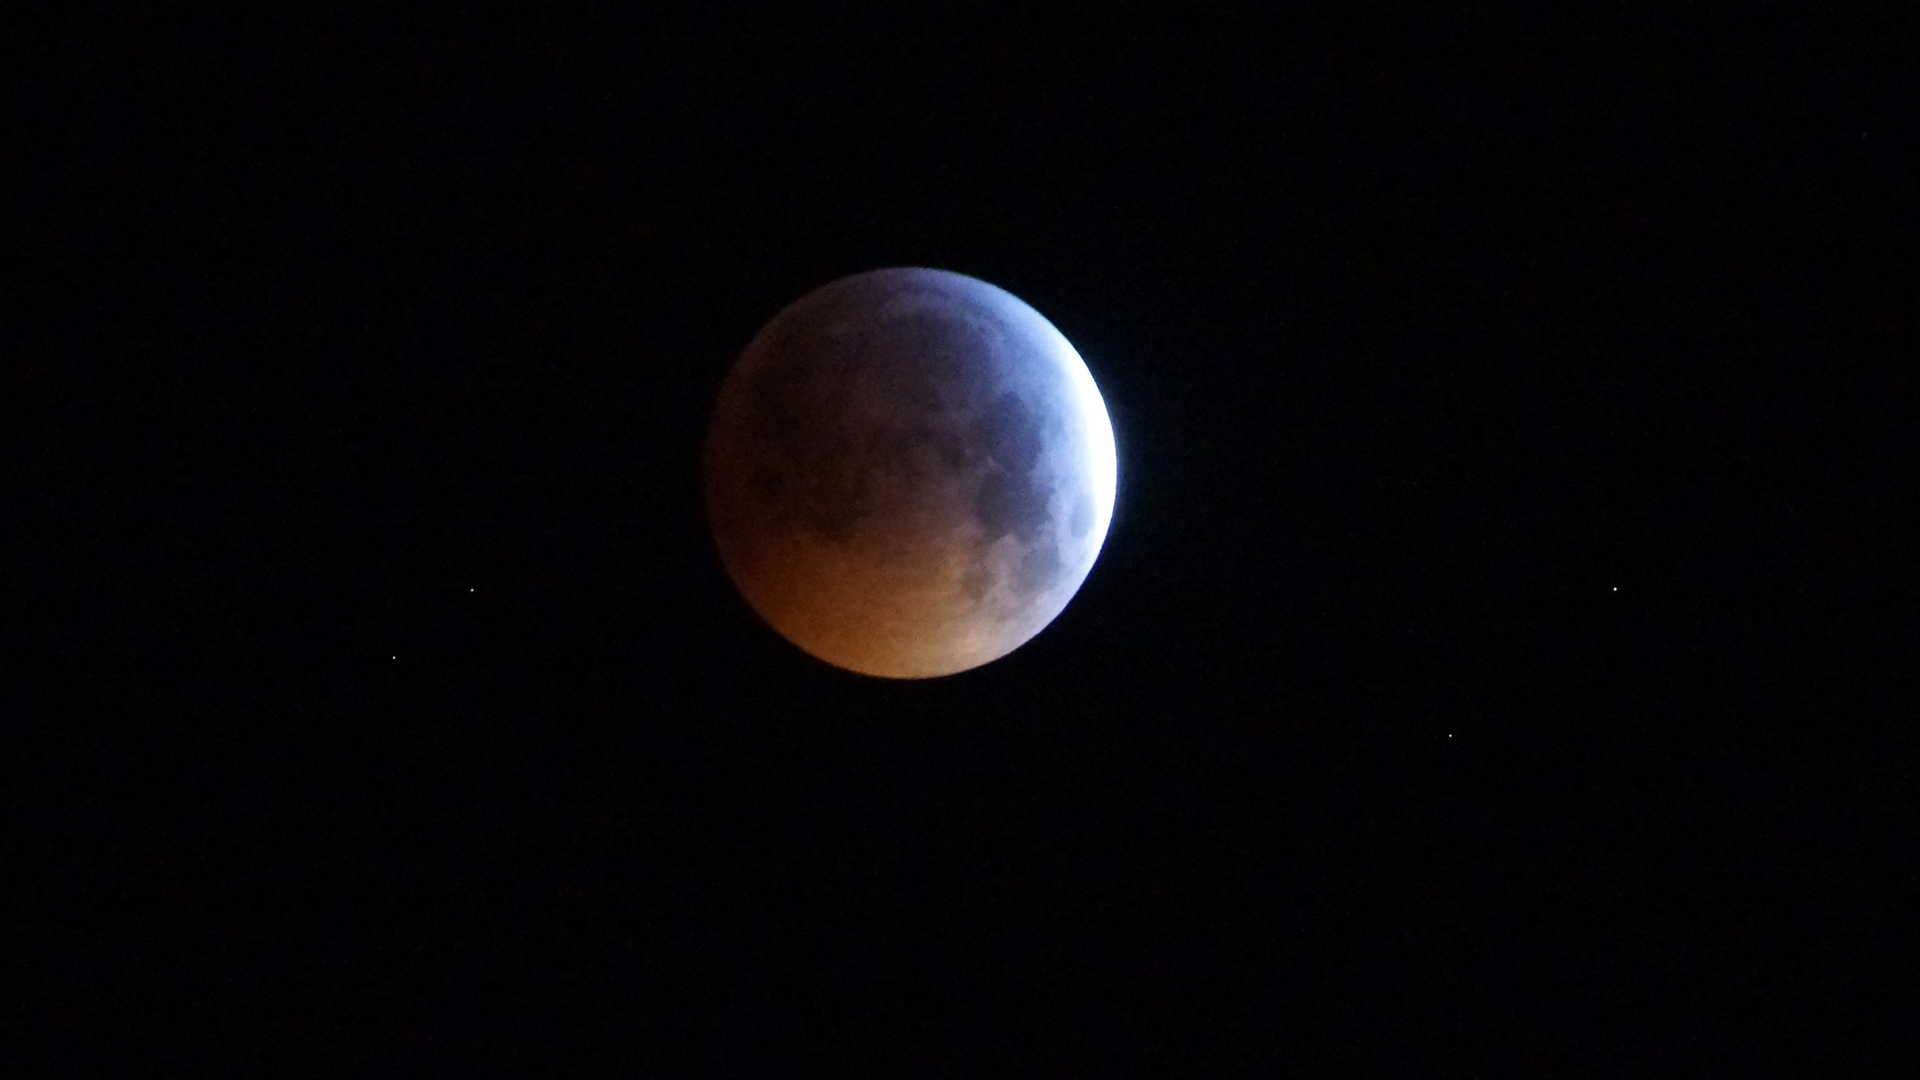 Fotostrecke Mond, Abbildung 14: Mondfinsternis bzw. Blutmond am 21. Jänner 2019, von Wolfsgraben aus Richtung Westen fotografiert